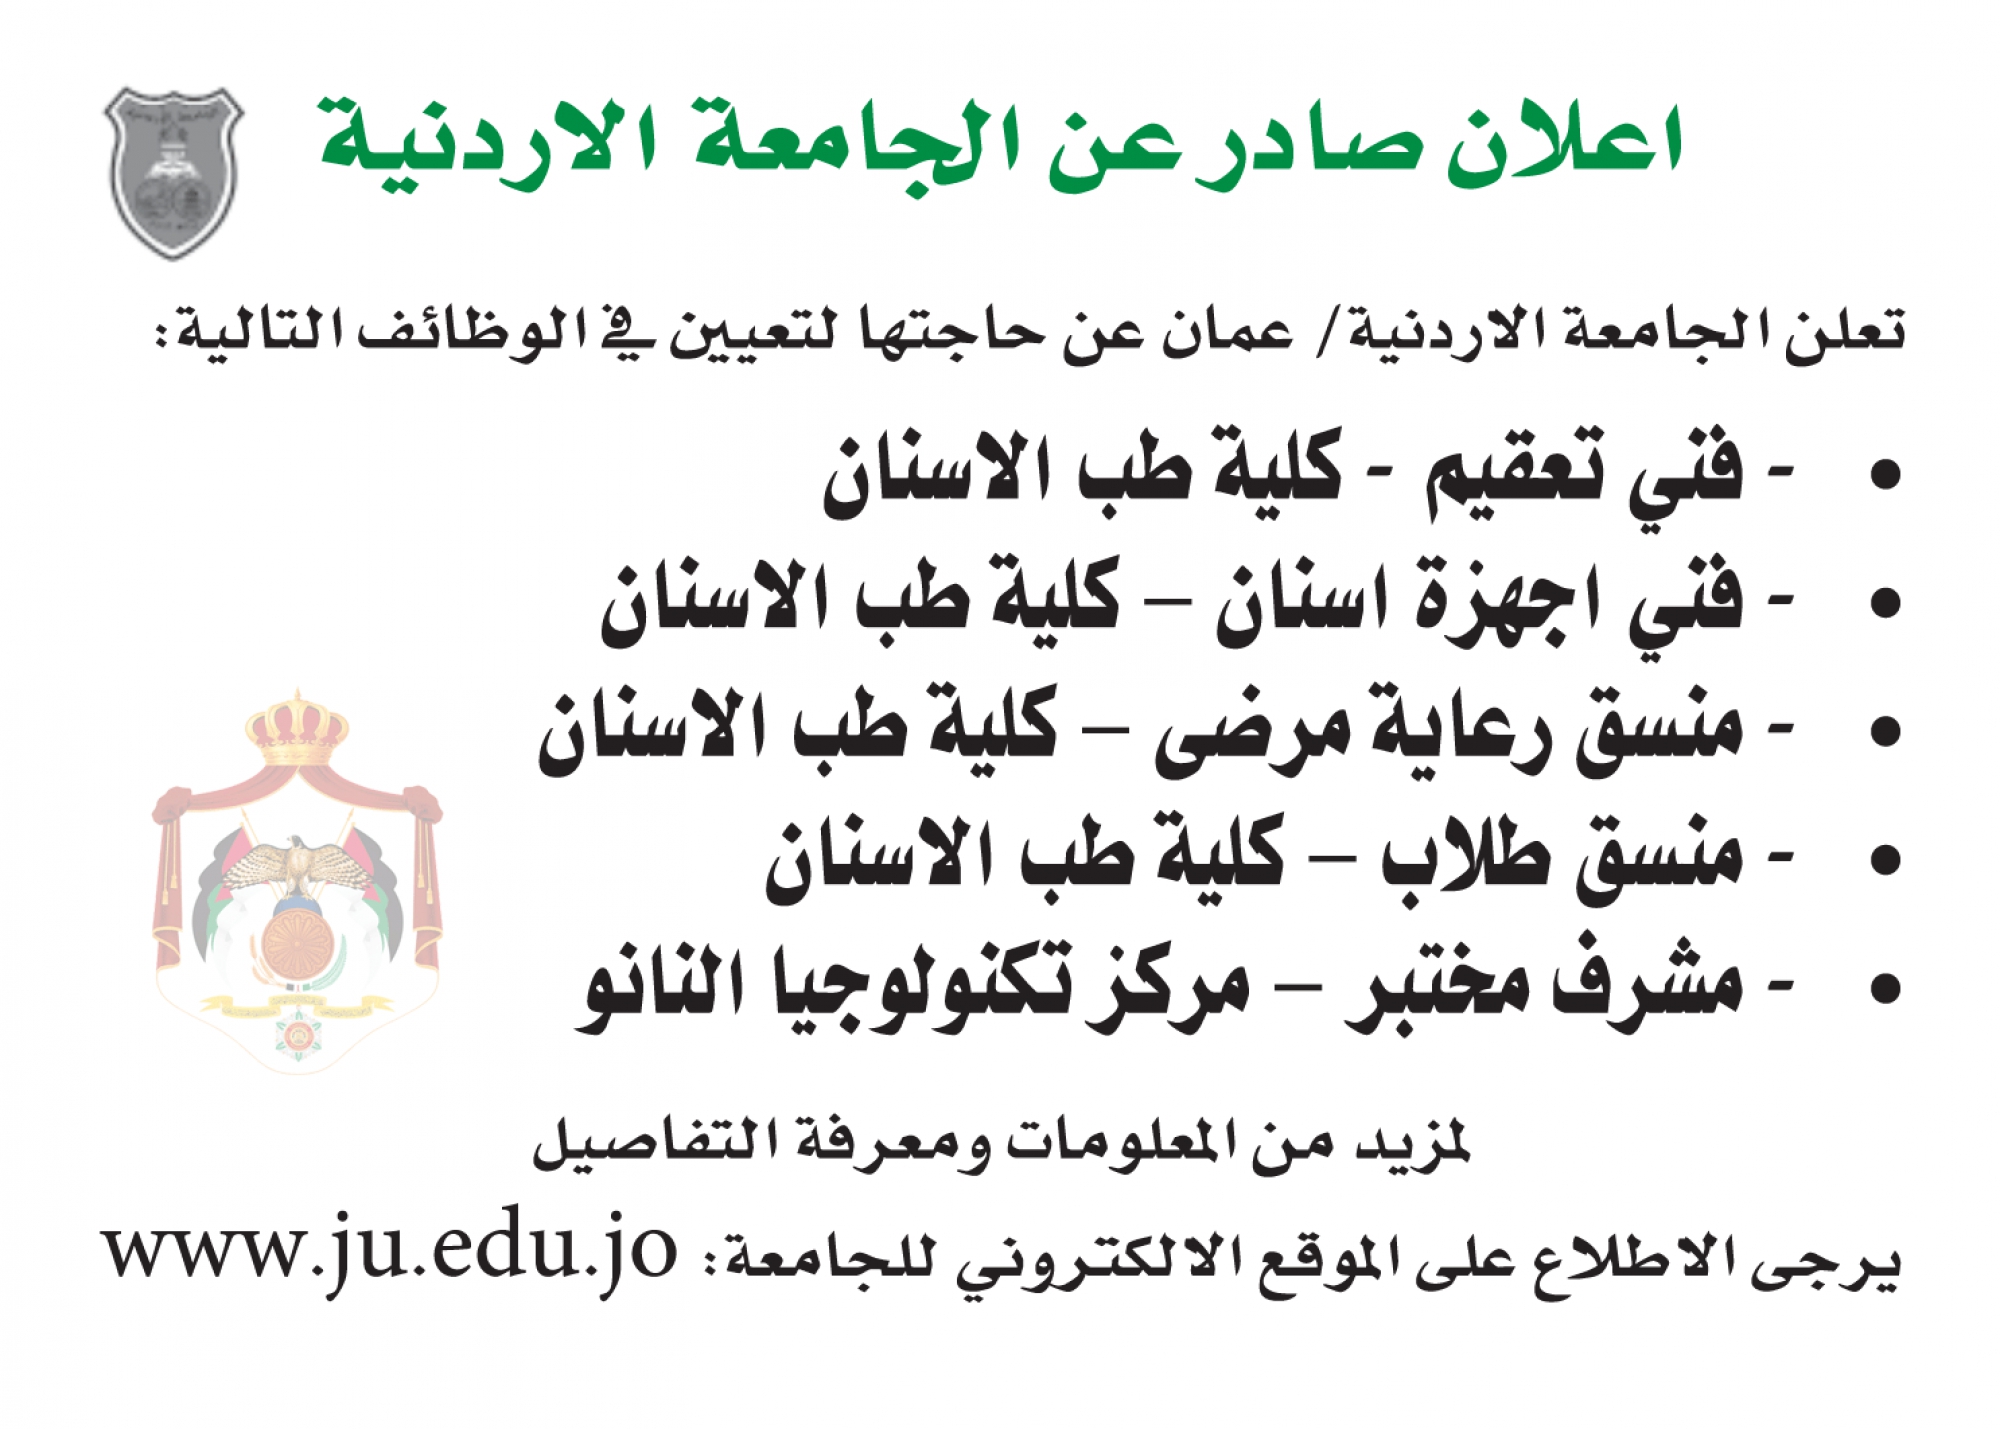 الجامعة الأردنية تعلن عن فرص عمل في كلية طب الأسنان ومركز تكنولوجيا النانو (تفاصيل)